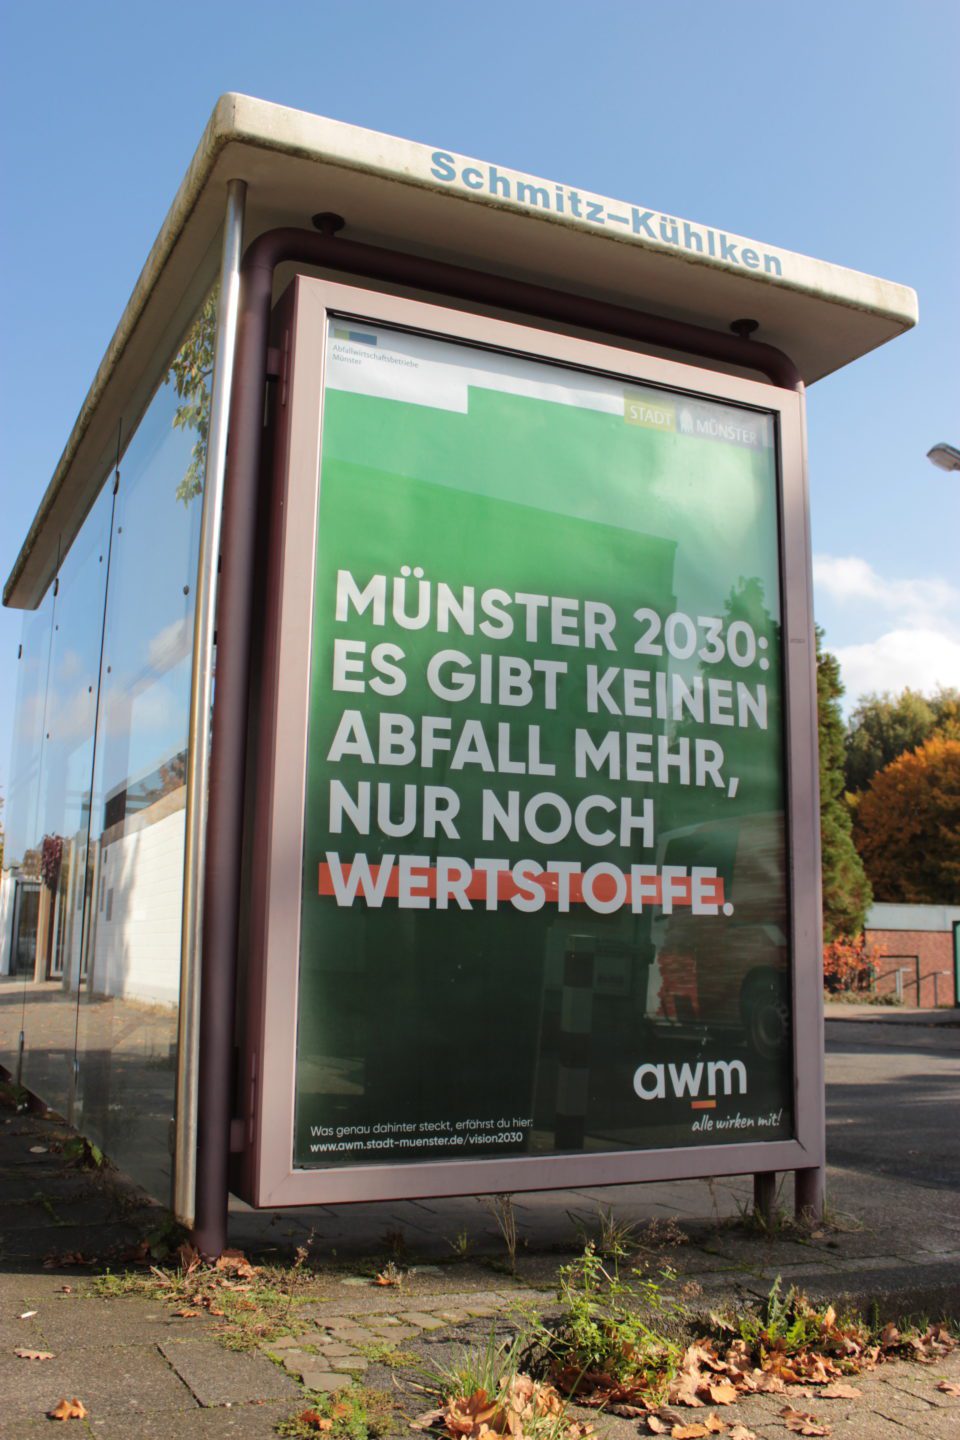 City-Plakat an Bushaltestelle mit dem Text "Münster 2030 - es gibt keine Abfälle mehr, nur noch Wertstoffe.